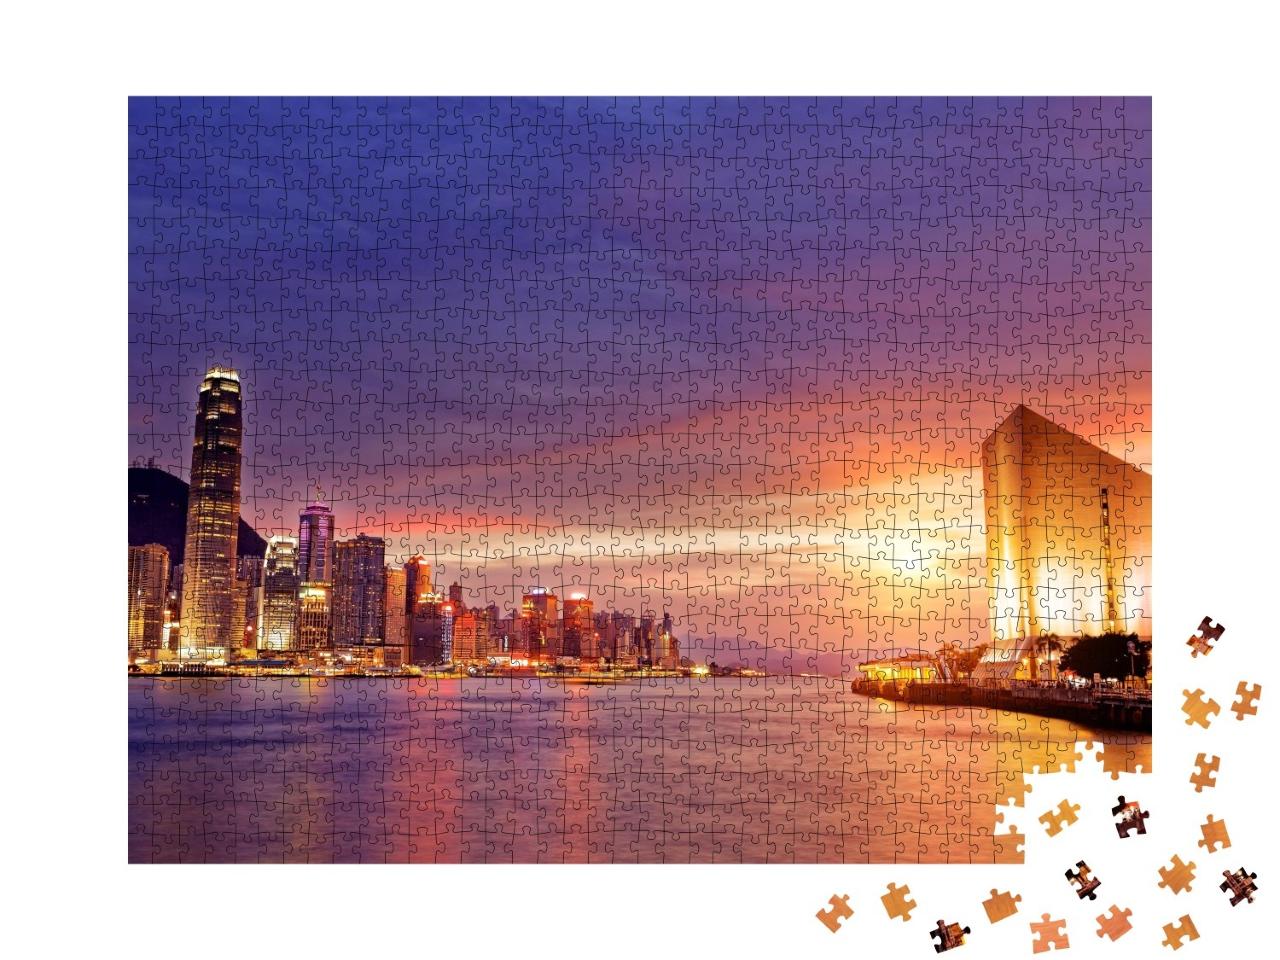 Puzzle de 1000 pièces « Atmosphère calme au-dessus de Hong Kong au coucher du soleil »